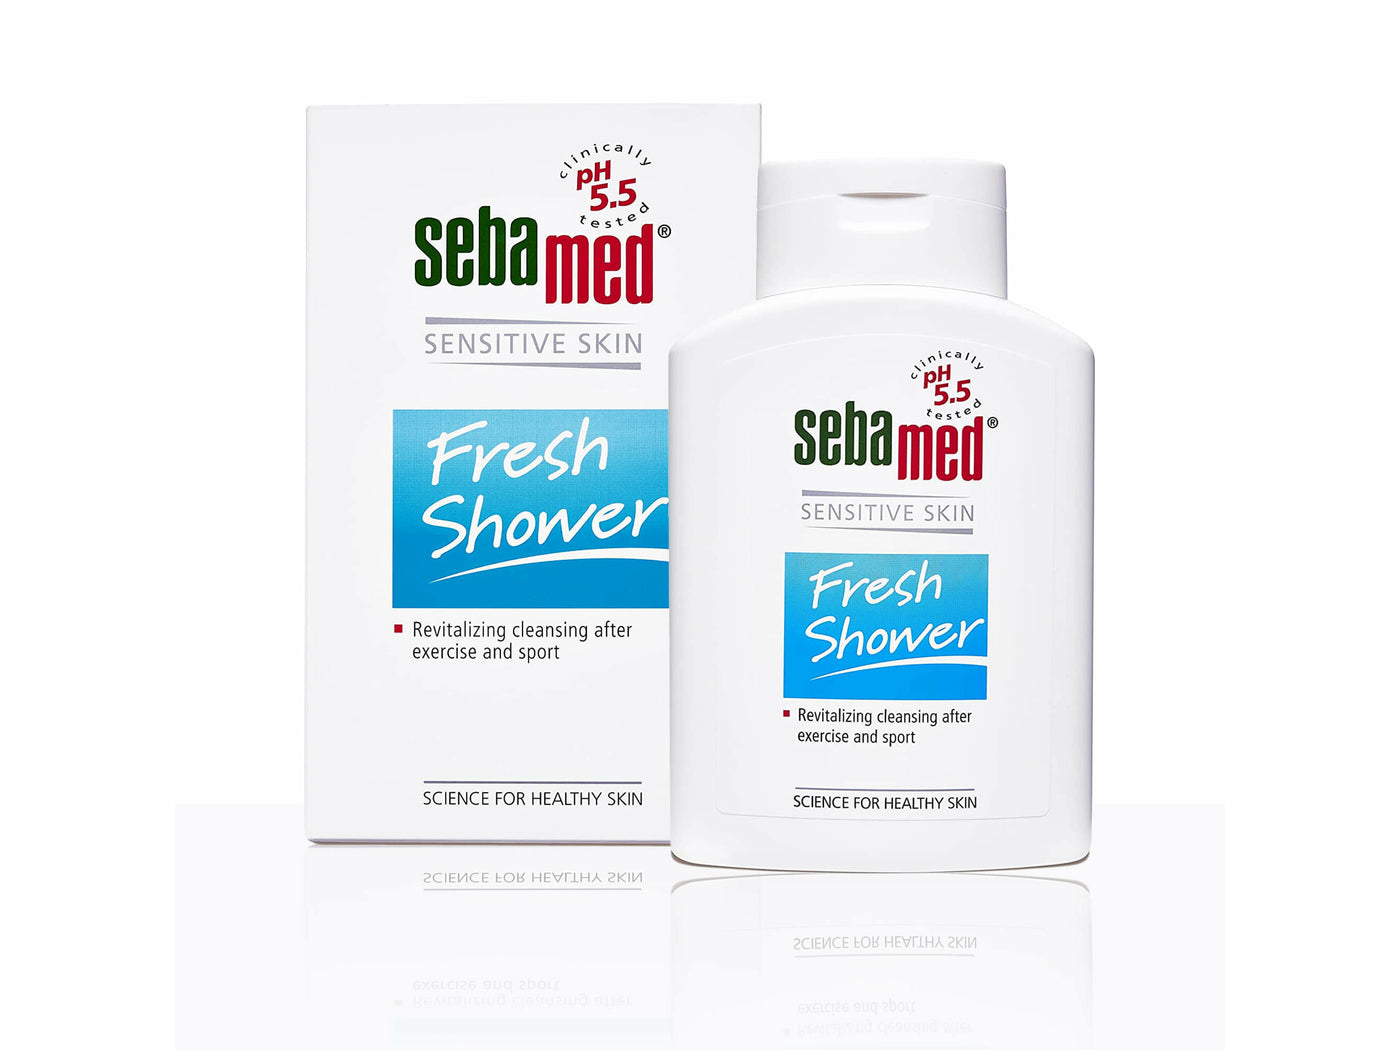 Sebamed Sensitive Skin Fresh Shower-Clinikally